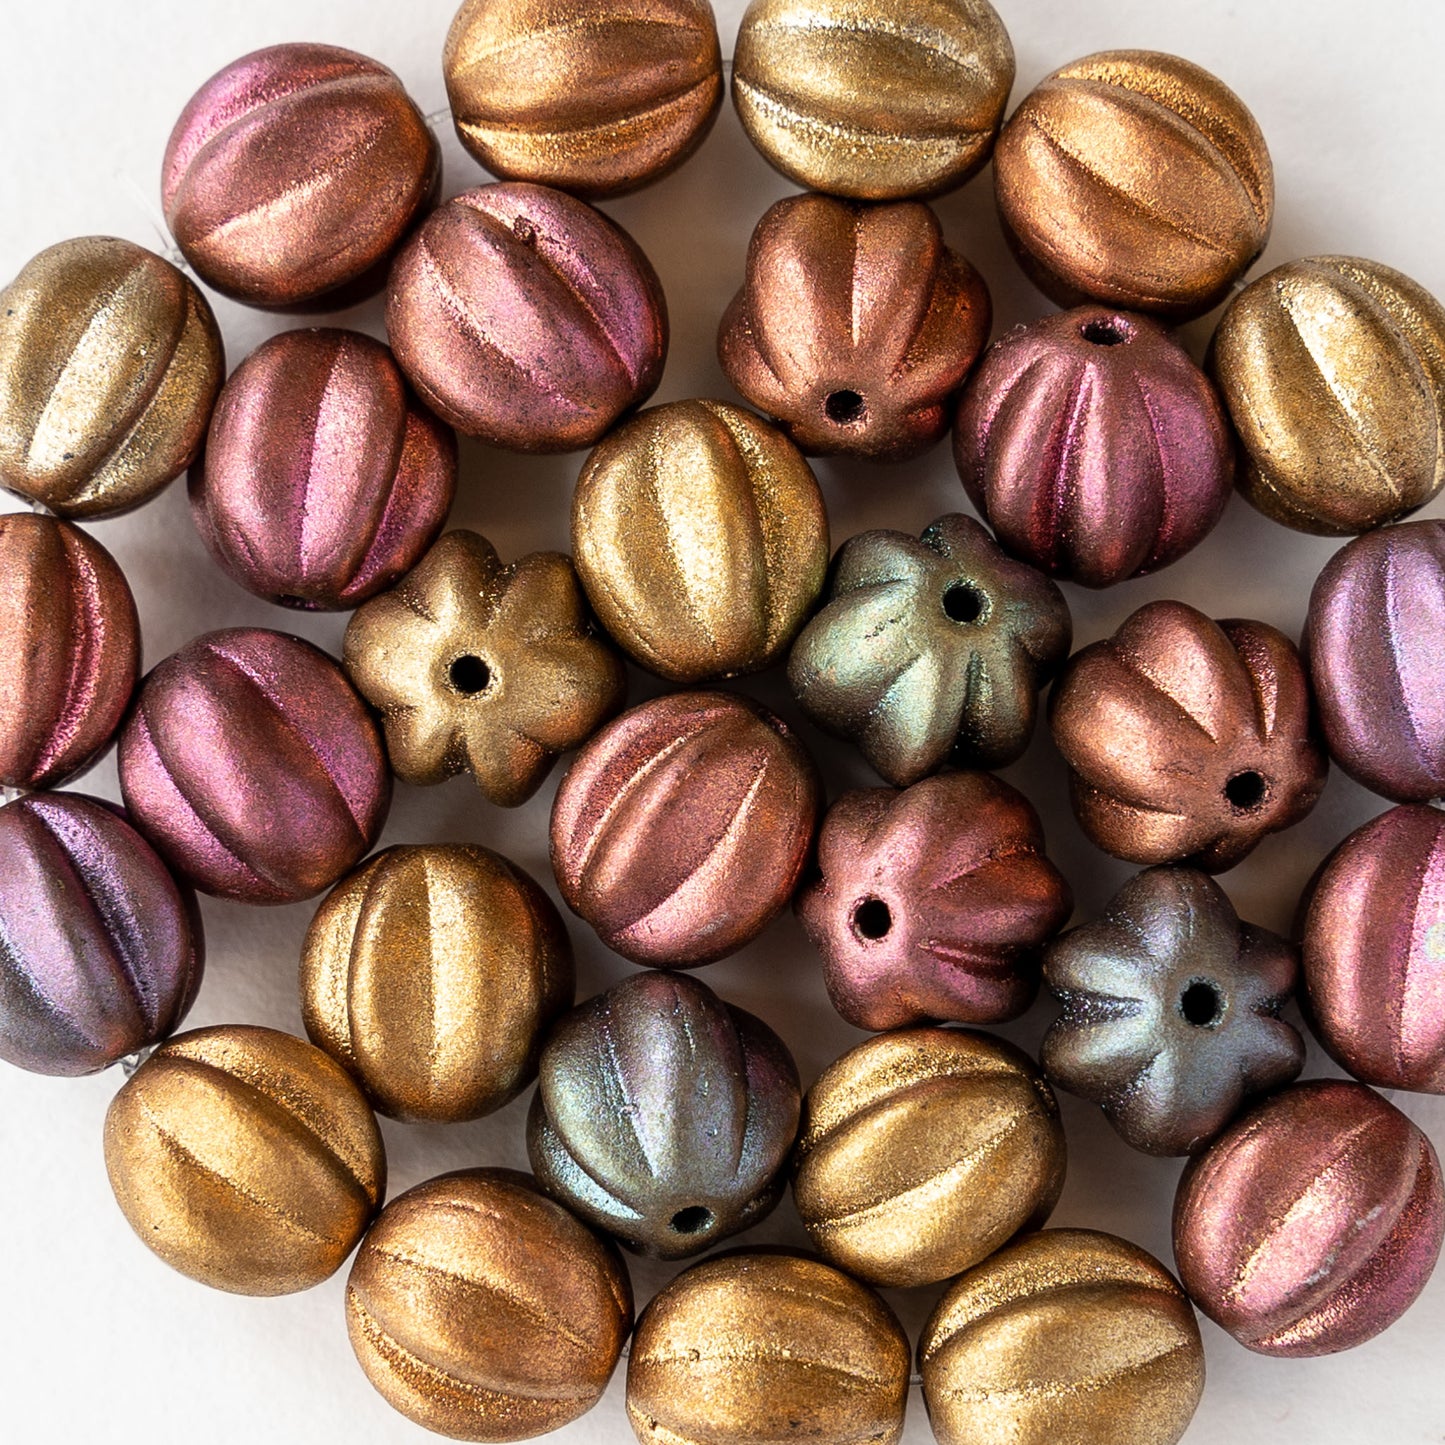 10mm Melon Beads - Metallic Bronze Iris Matte - 15 Beads